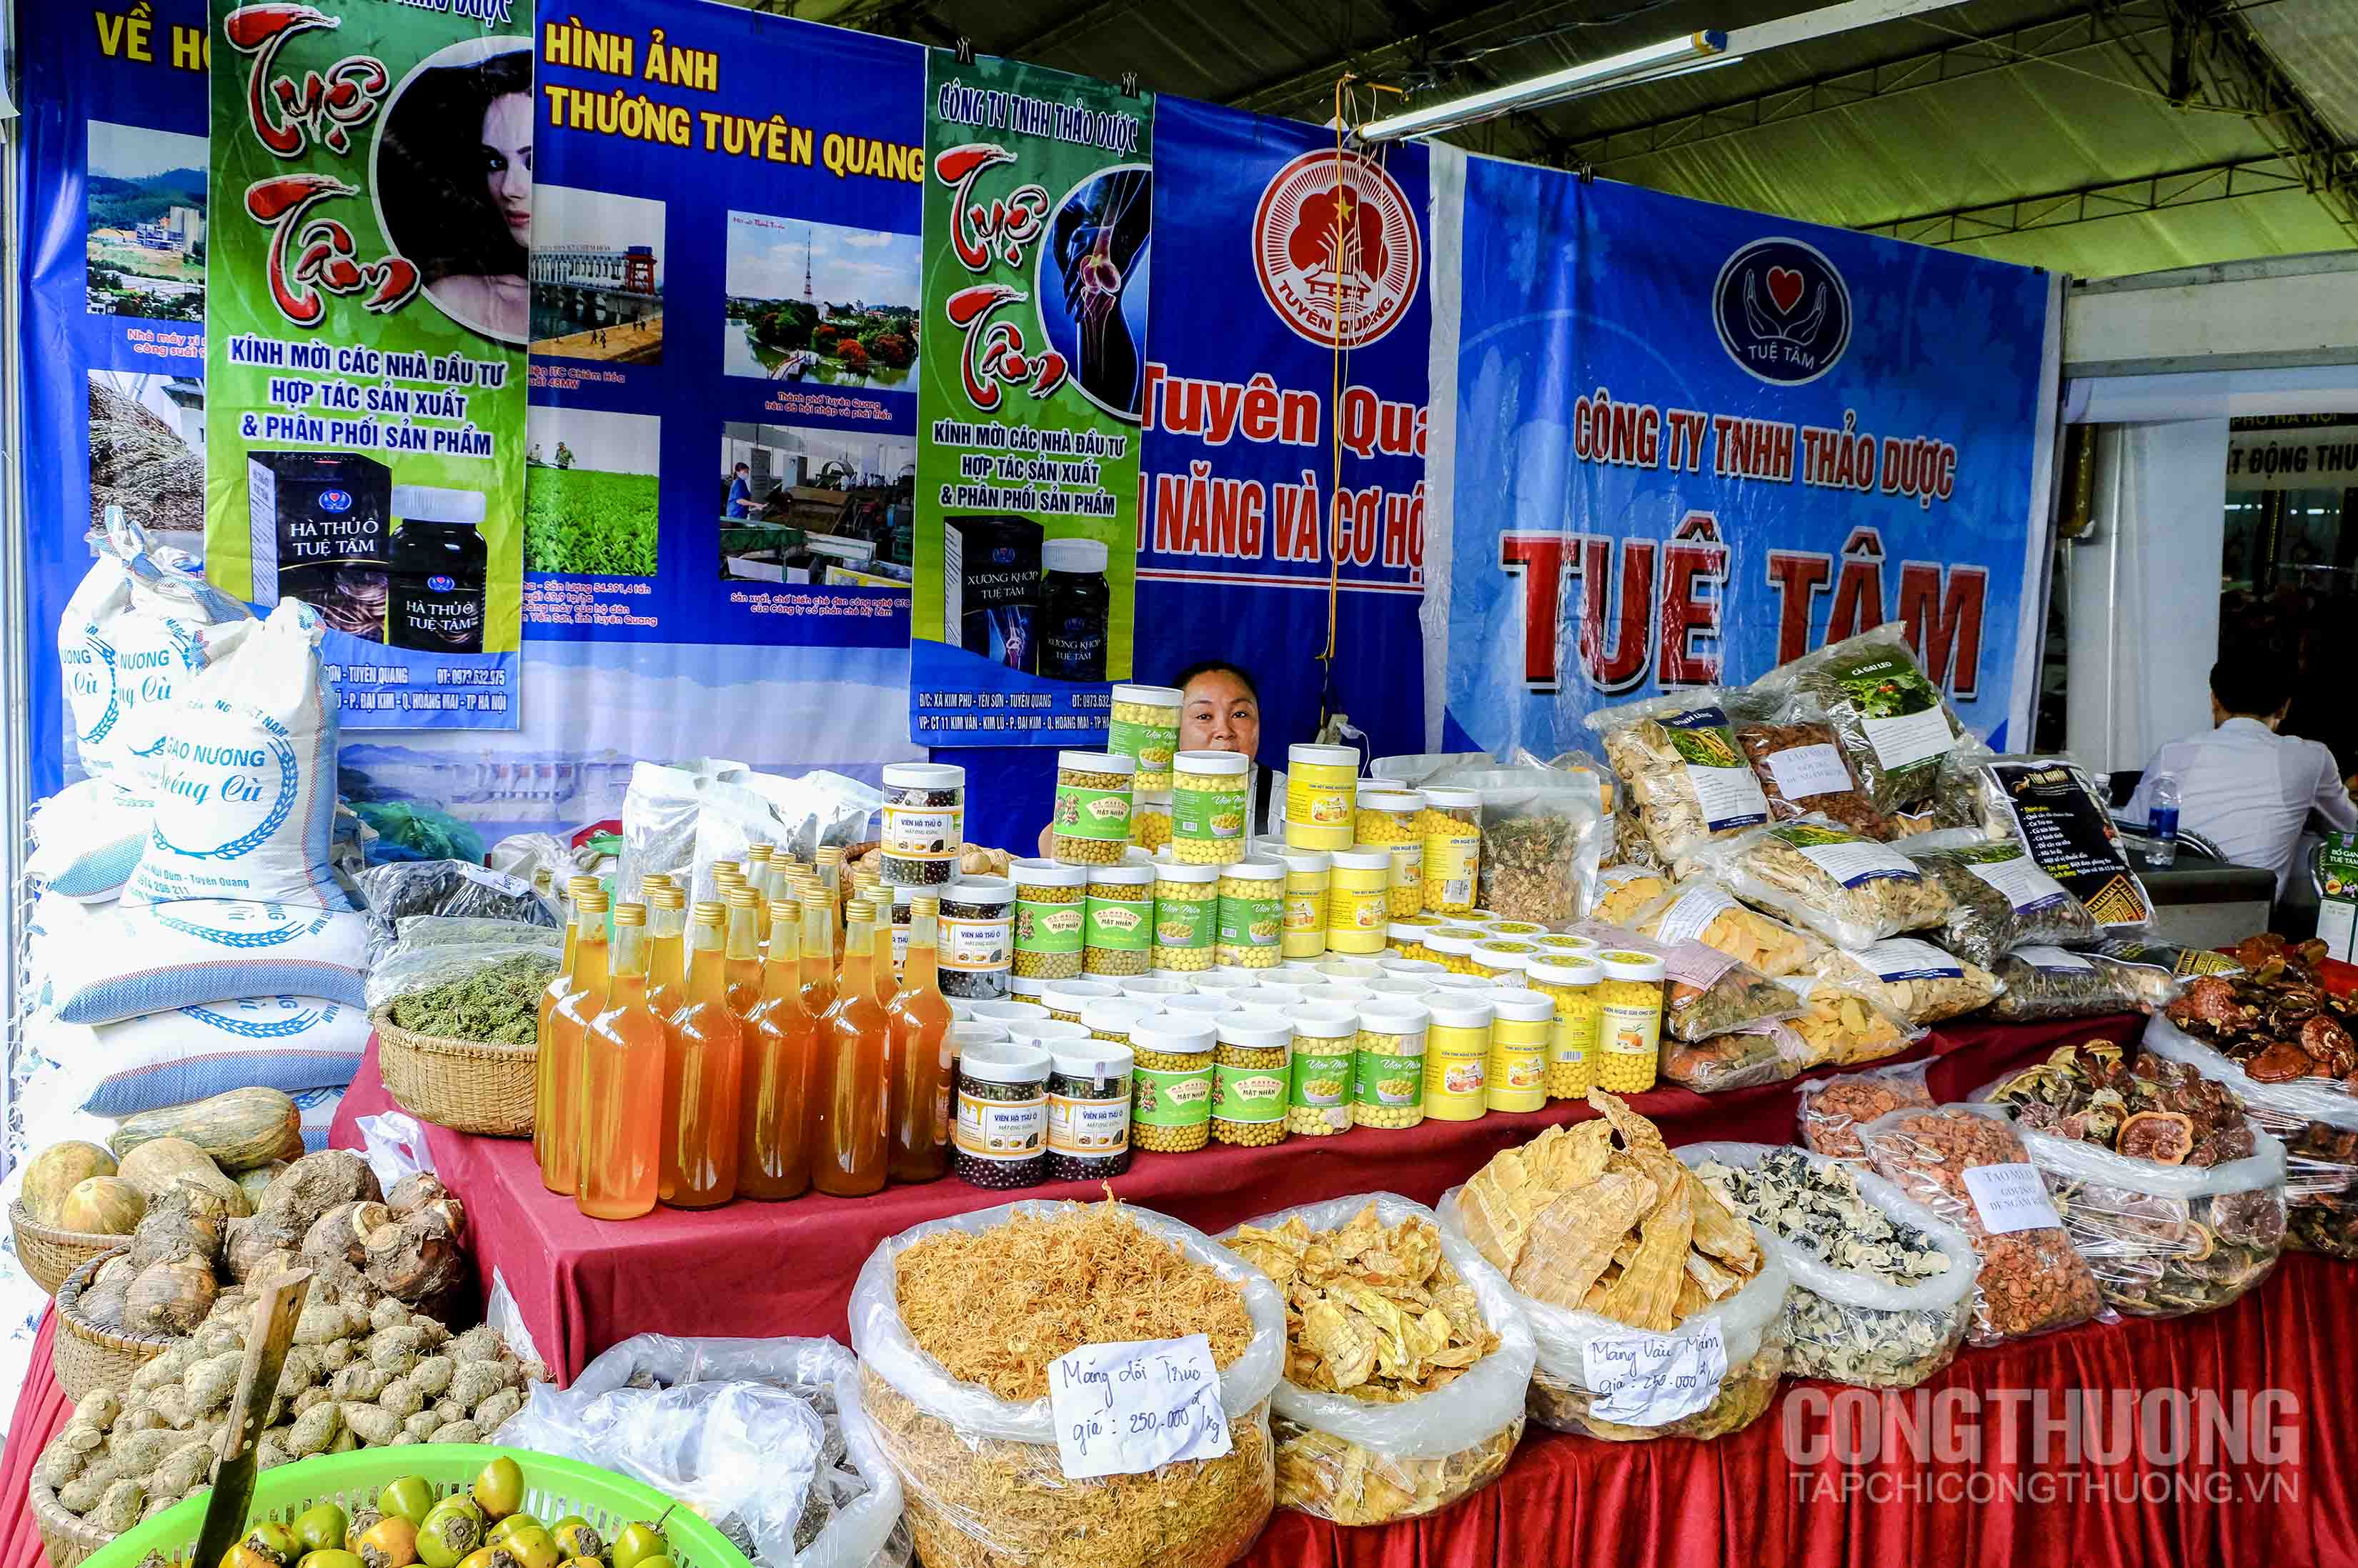 Hội chợ trưng bày và giới thiệu các sản phẩm công nghiệp nông thôn tiêu biểu của doanh nghiệp, cơ sở sản xuất ở các địa phương trên cả nước